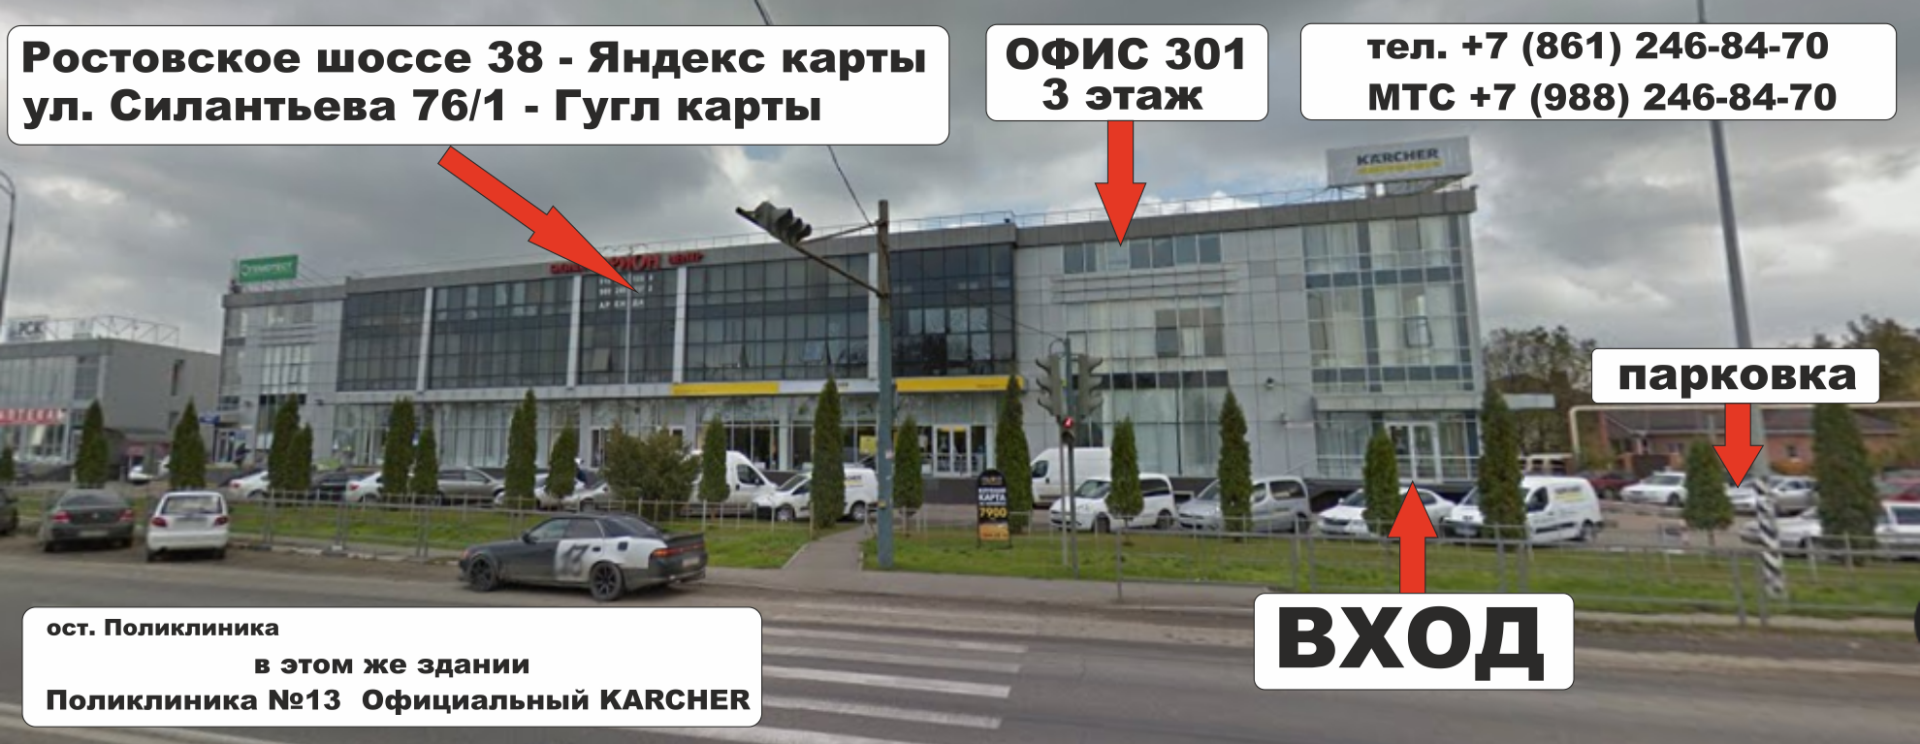 Завод изоляционных материалов Юг - филиал Краснодар